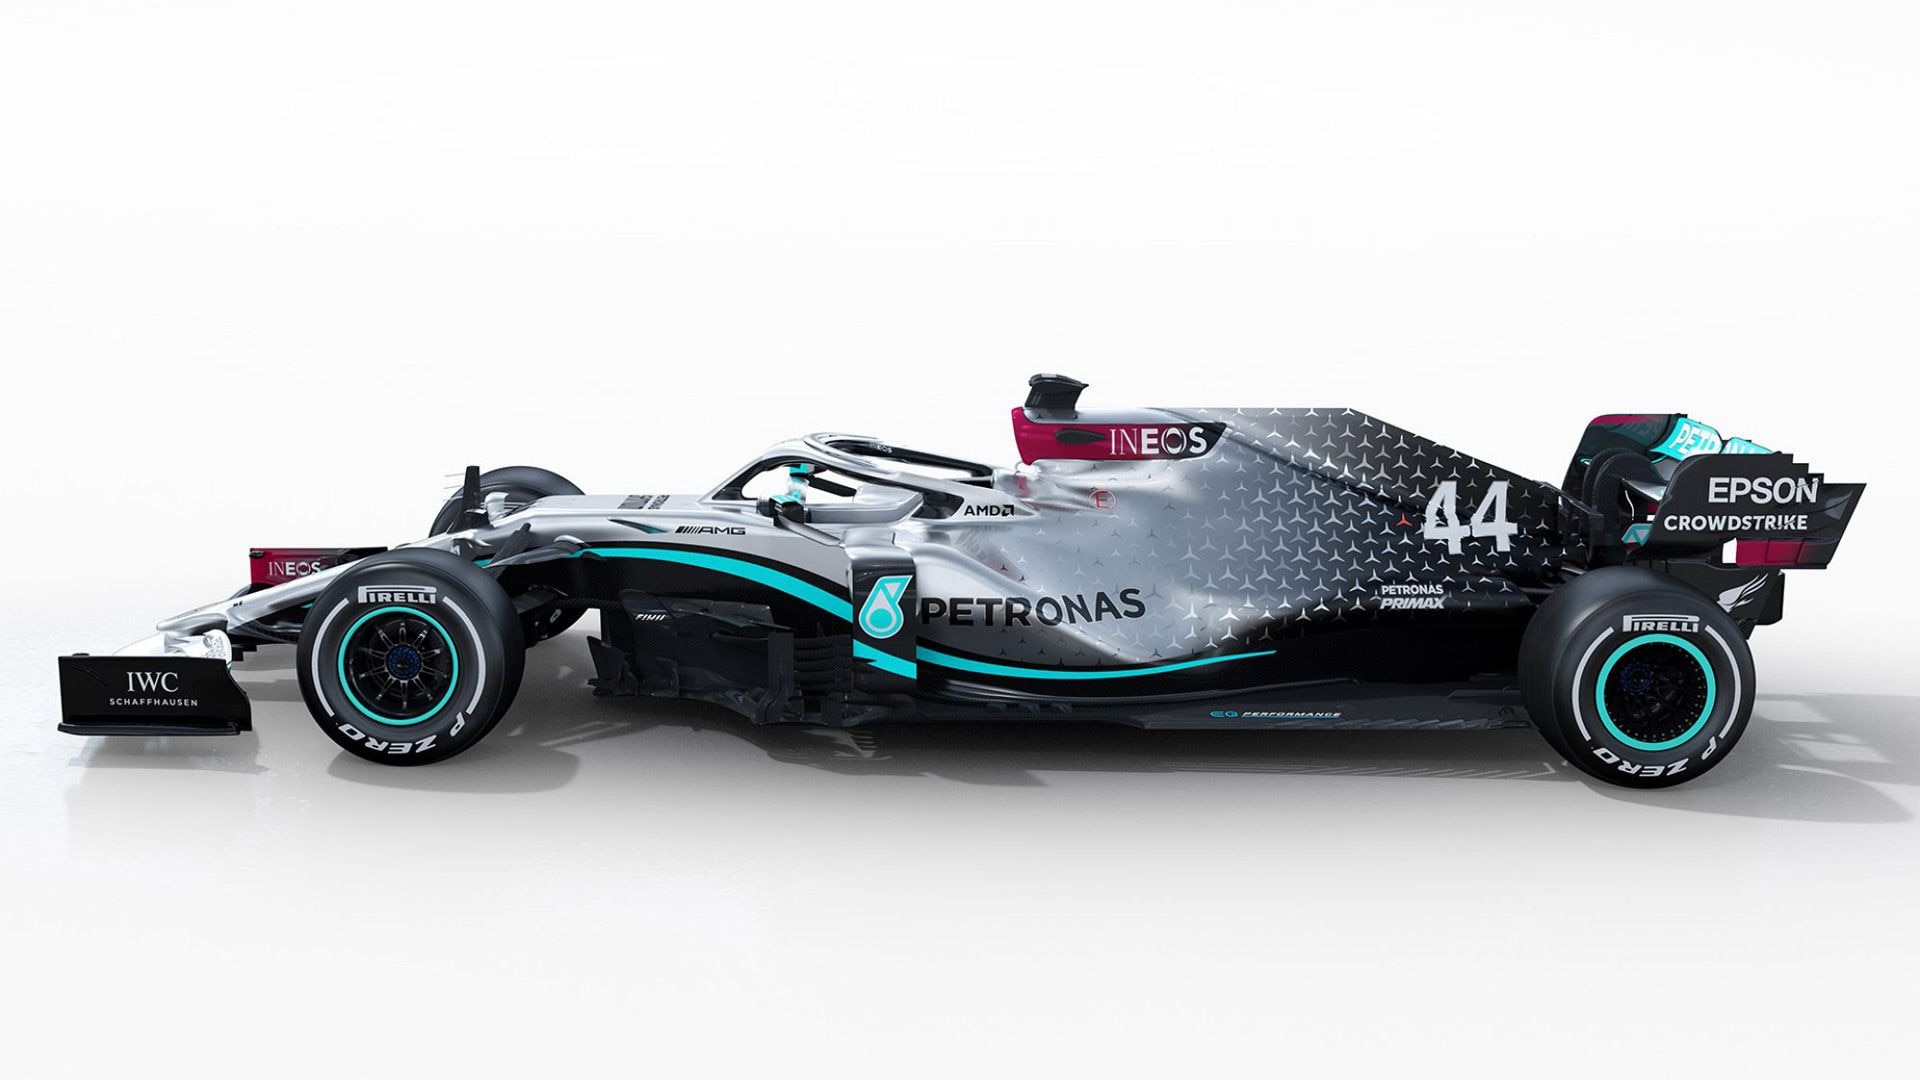 Mercedes-AMG F1 W11 EQ Performance 2020 Formula One race car